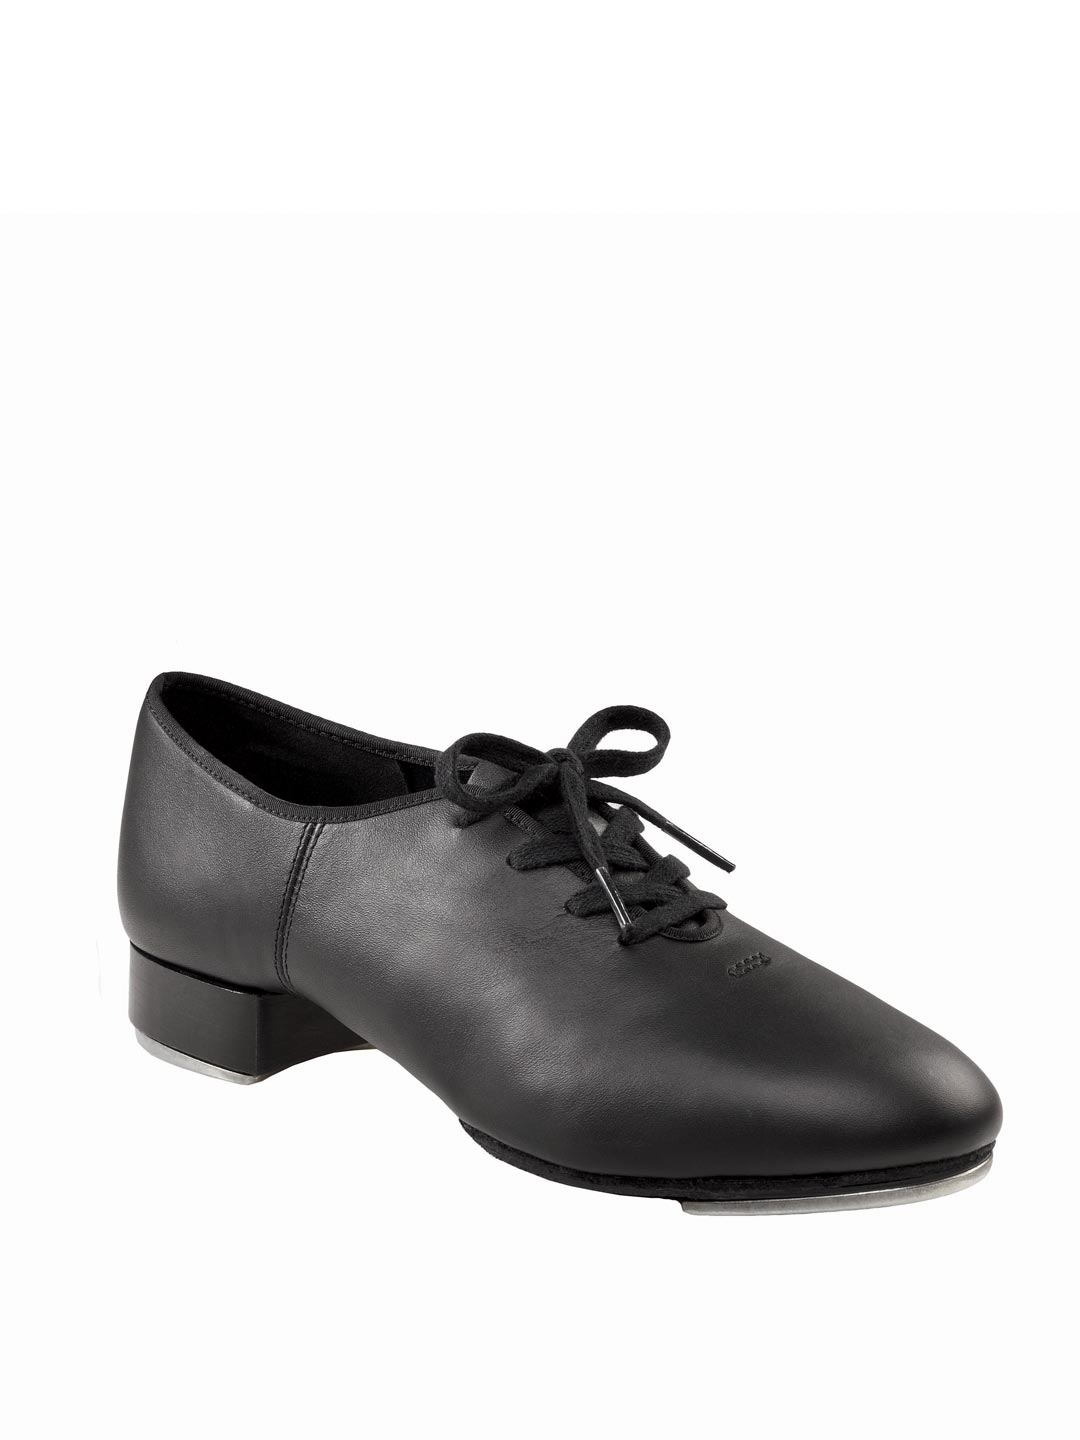 Capezio CG355 Adult Size 4M Schoenen Meisjesschoenen Dansschoenen Fits Size 5.5 Tan Coppola Jazz Lace Up Tap Shoe 